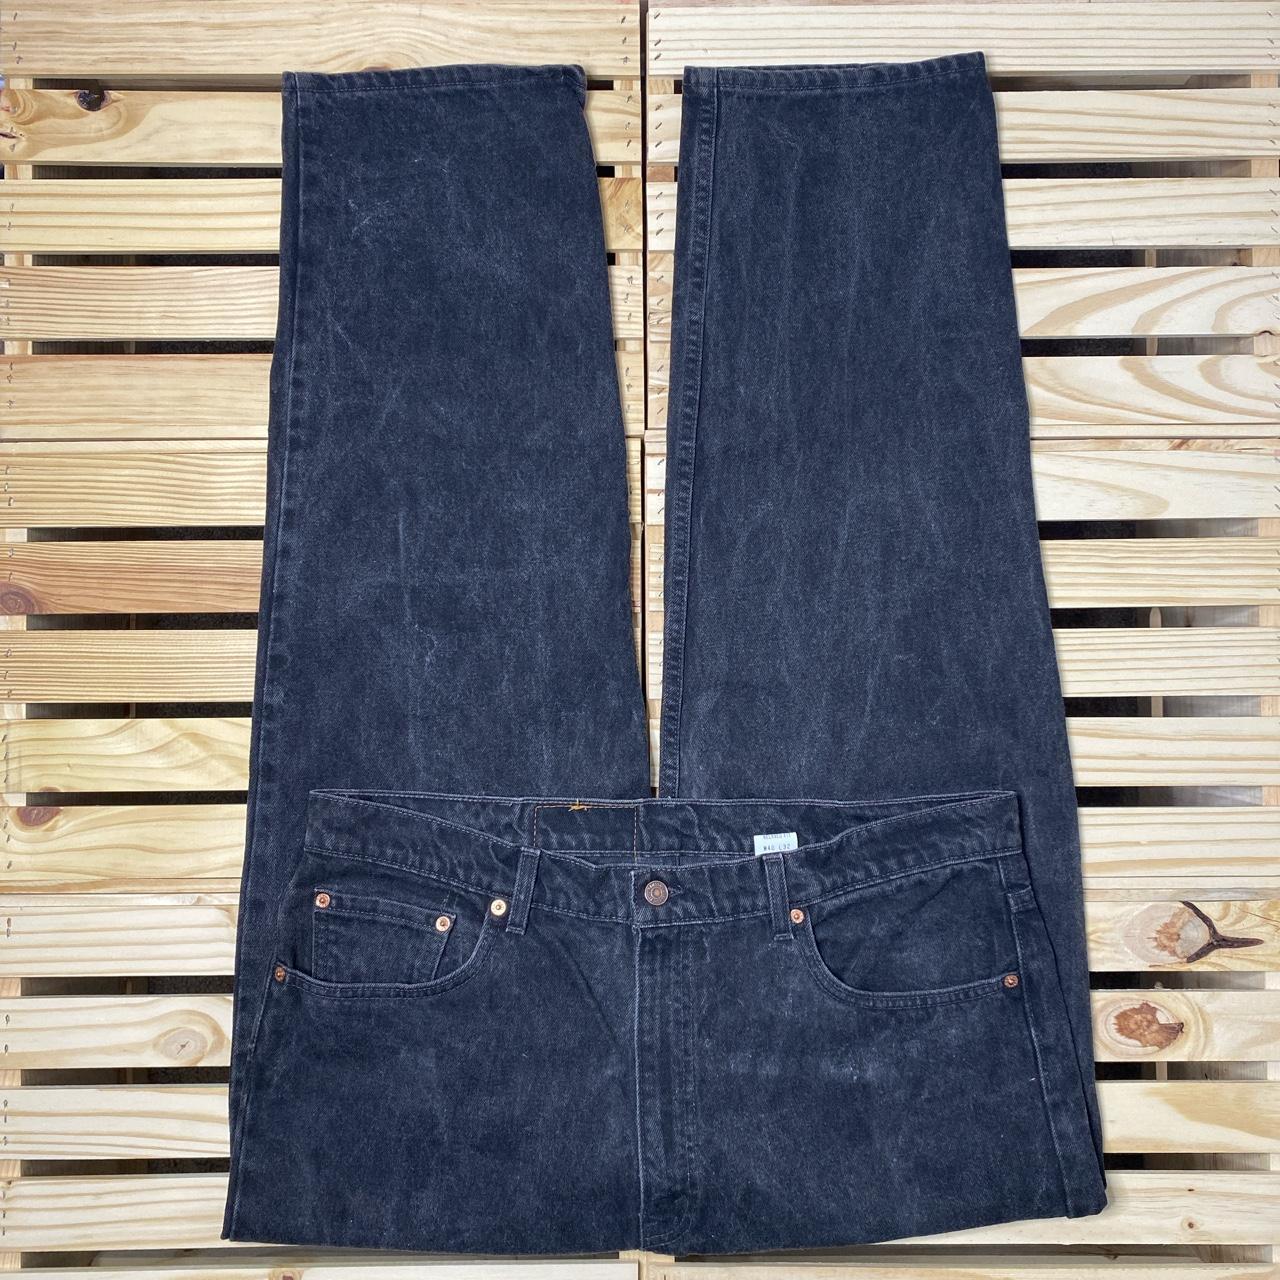 Vintage Levi's 550 Black Relaxed Fit Denim Jeans... - Depop